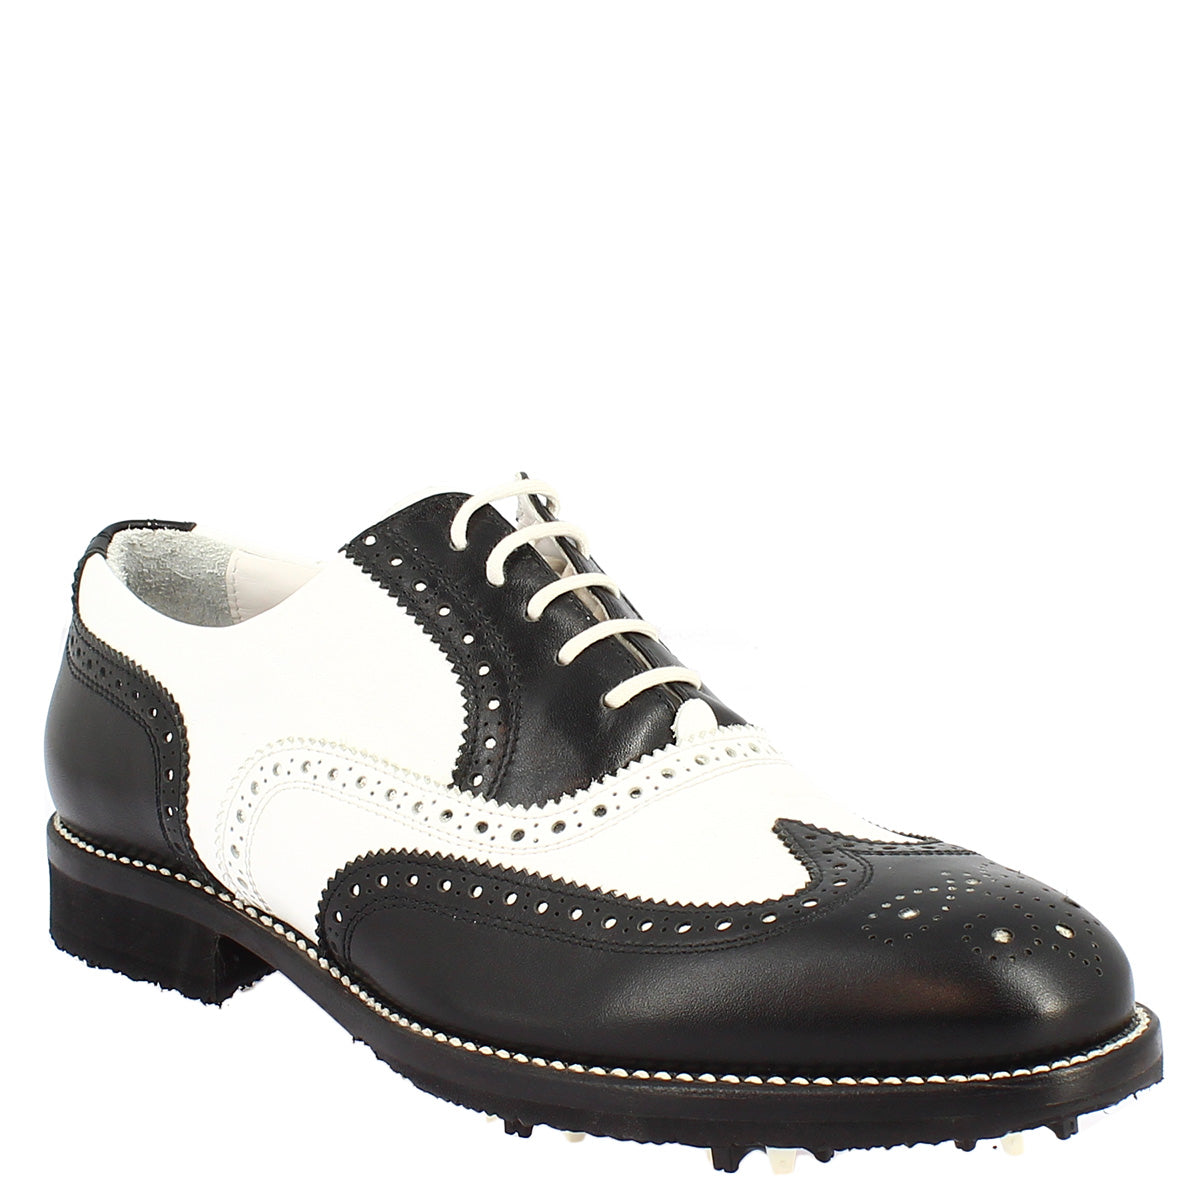 Zweifarbige, handgefertigte Leder-Golfschuhe in Schwarz/Weiß